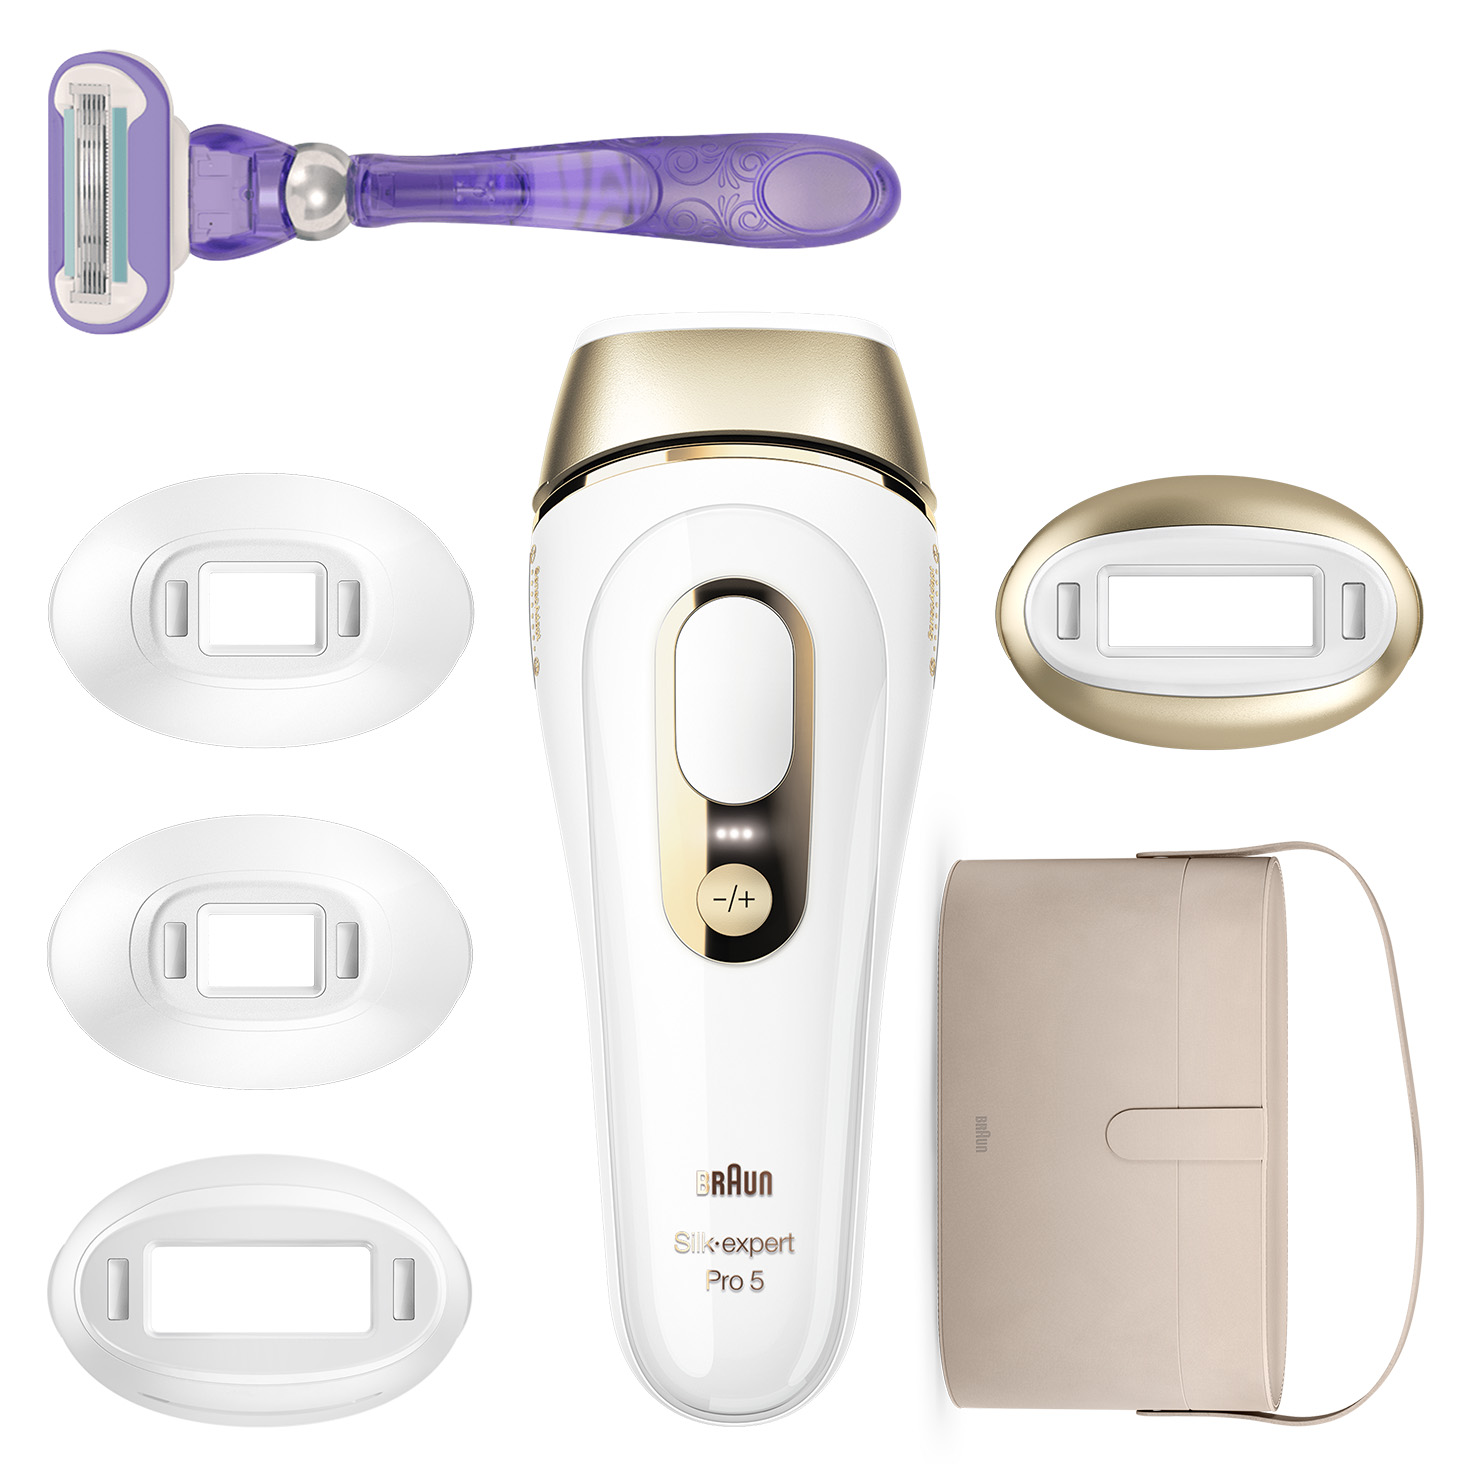  Braun Dispositivo de depilación láser de larga duración IPL  para mujeres y hombres, Silk Expert Pro 5 PL5347, para cuerpo y cara,  alternativa segura y prácticamente indolora a la depilación láser